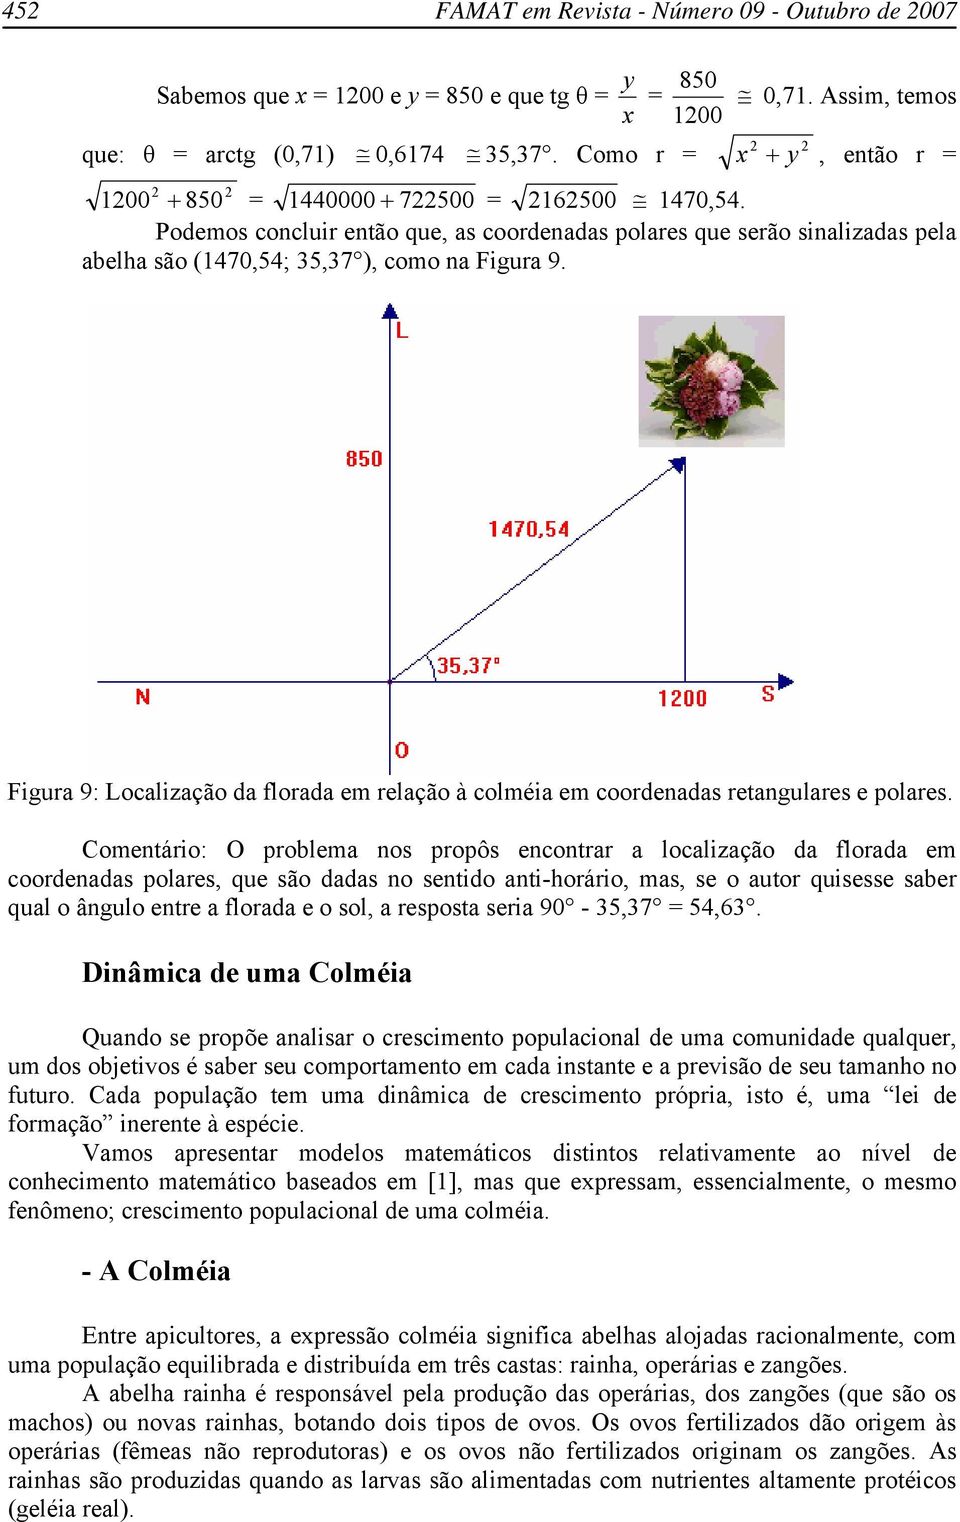 Figura 9: Localização da florada em relação à colméia em coordenadas retangulares e polares.